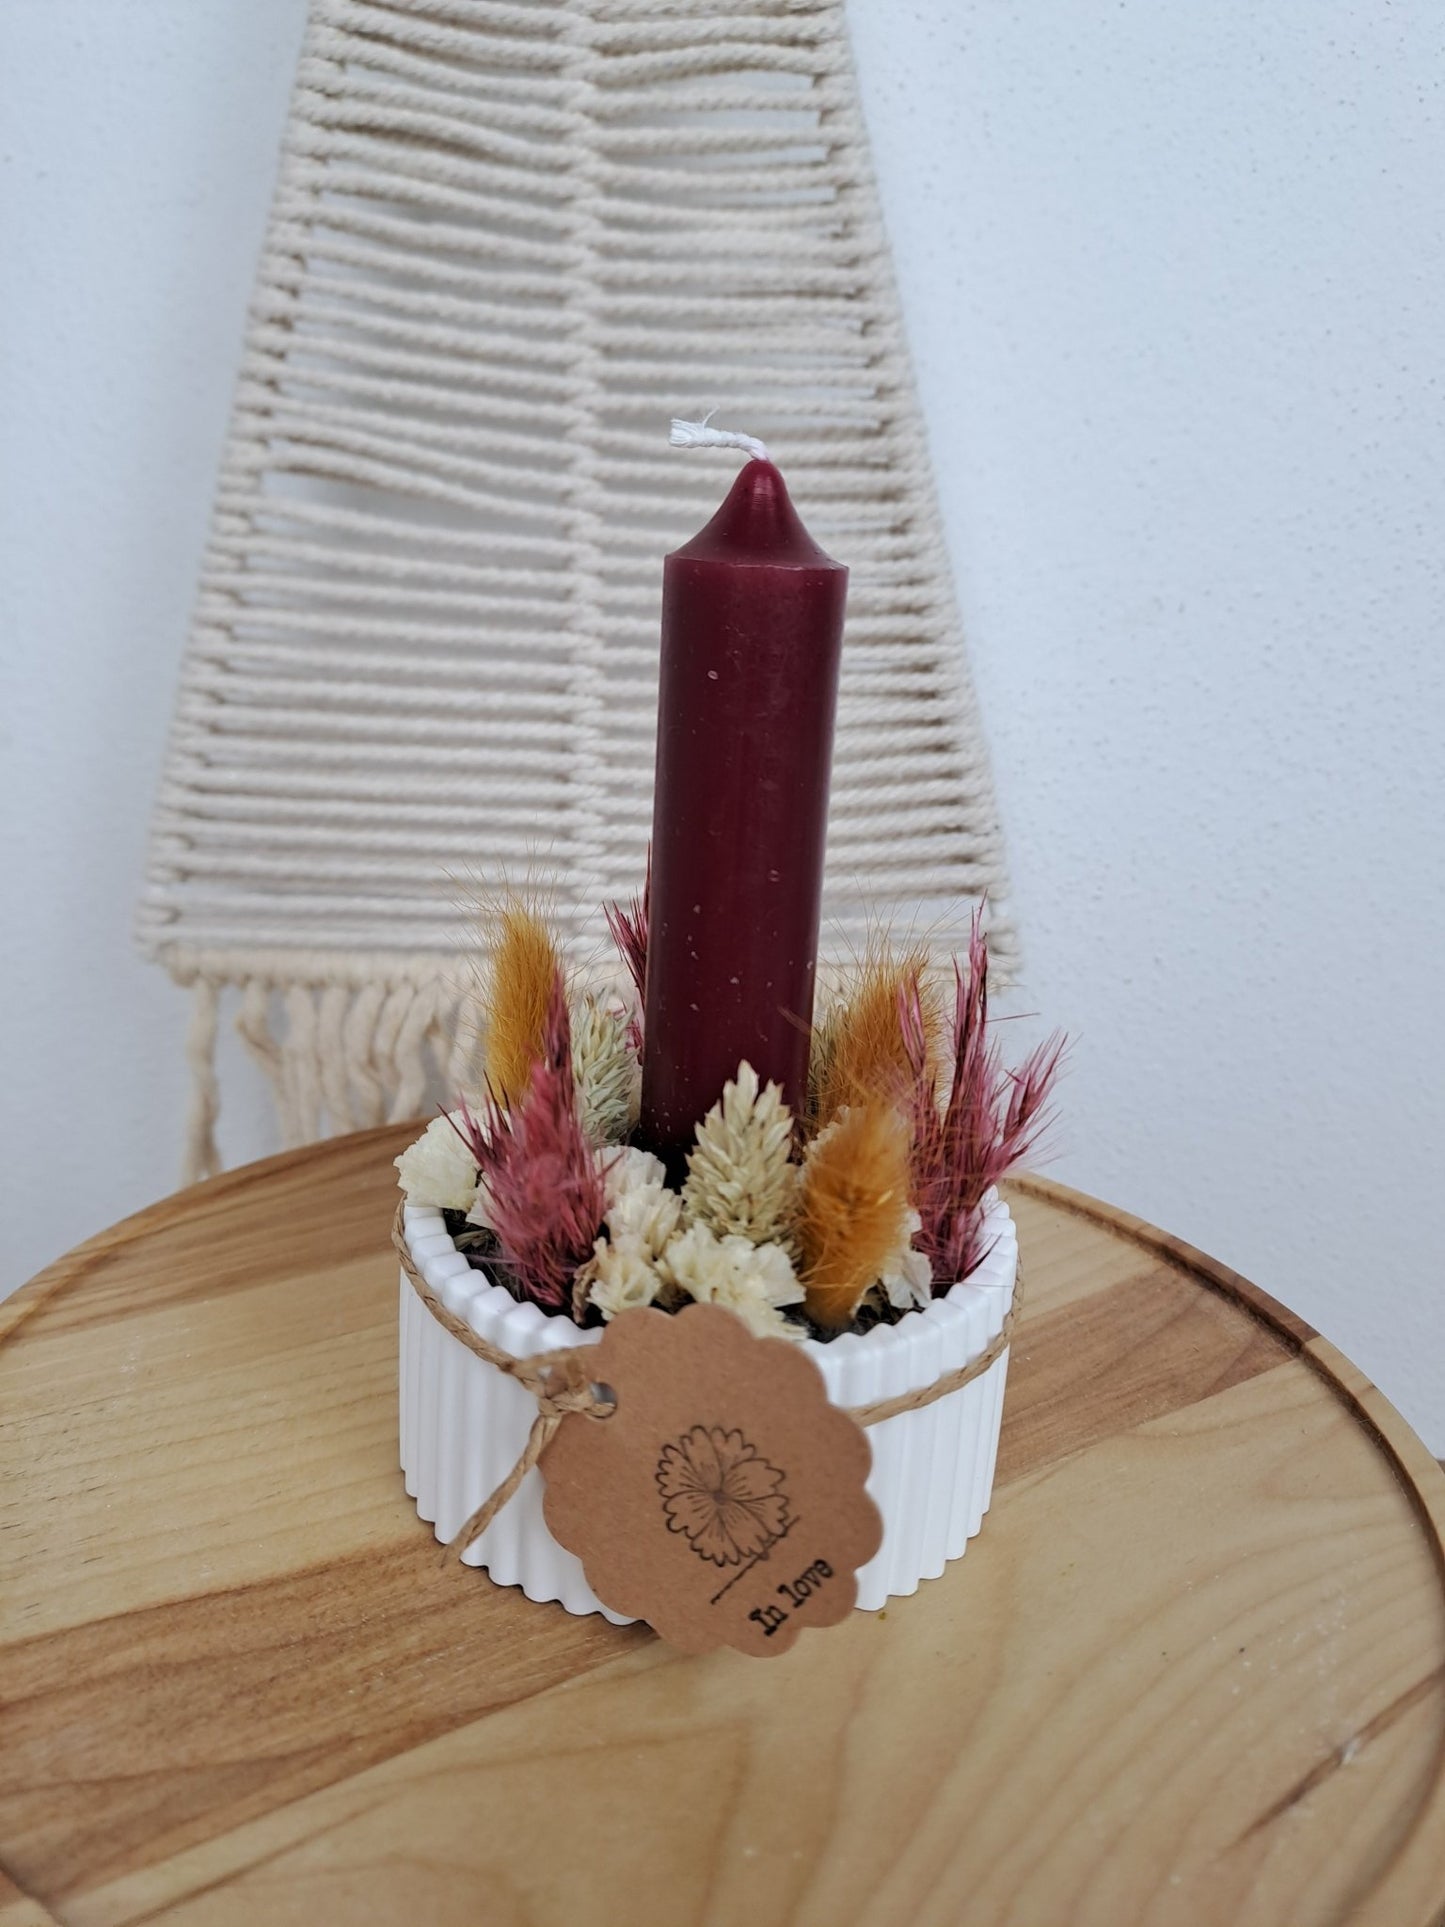 Kerzenschale mit Trockenblumen - Raysin